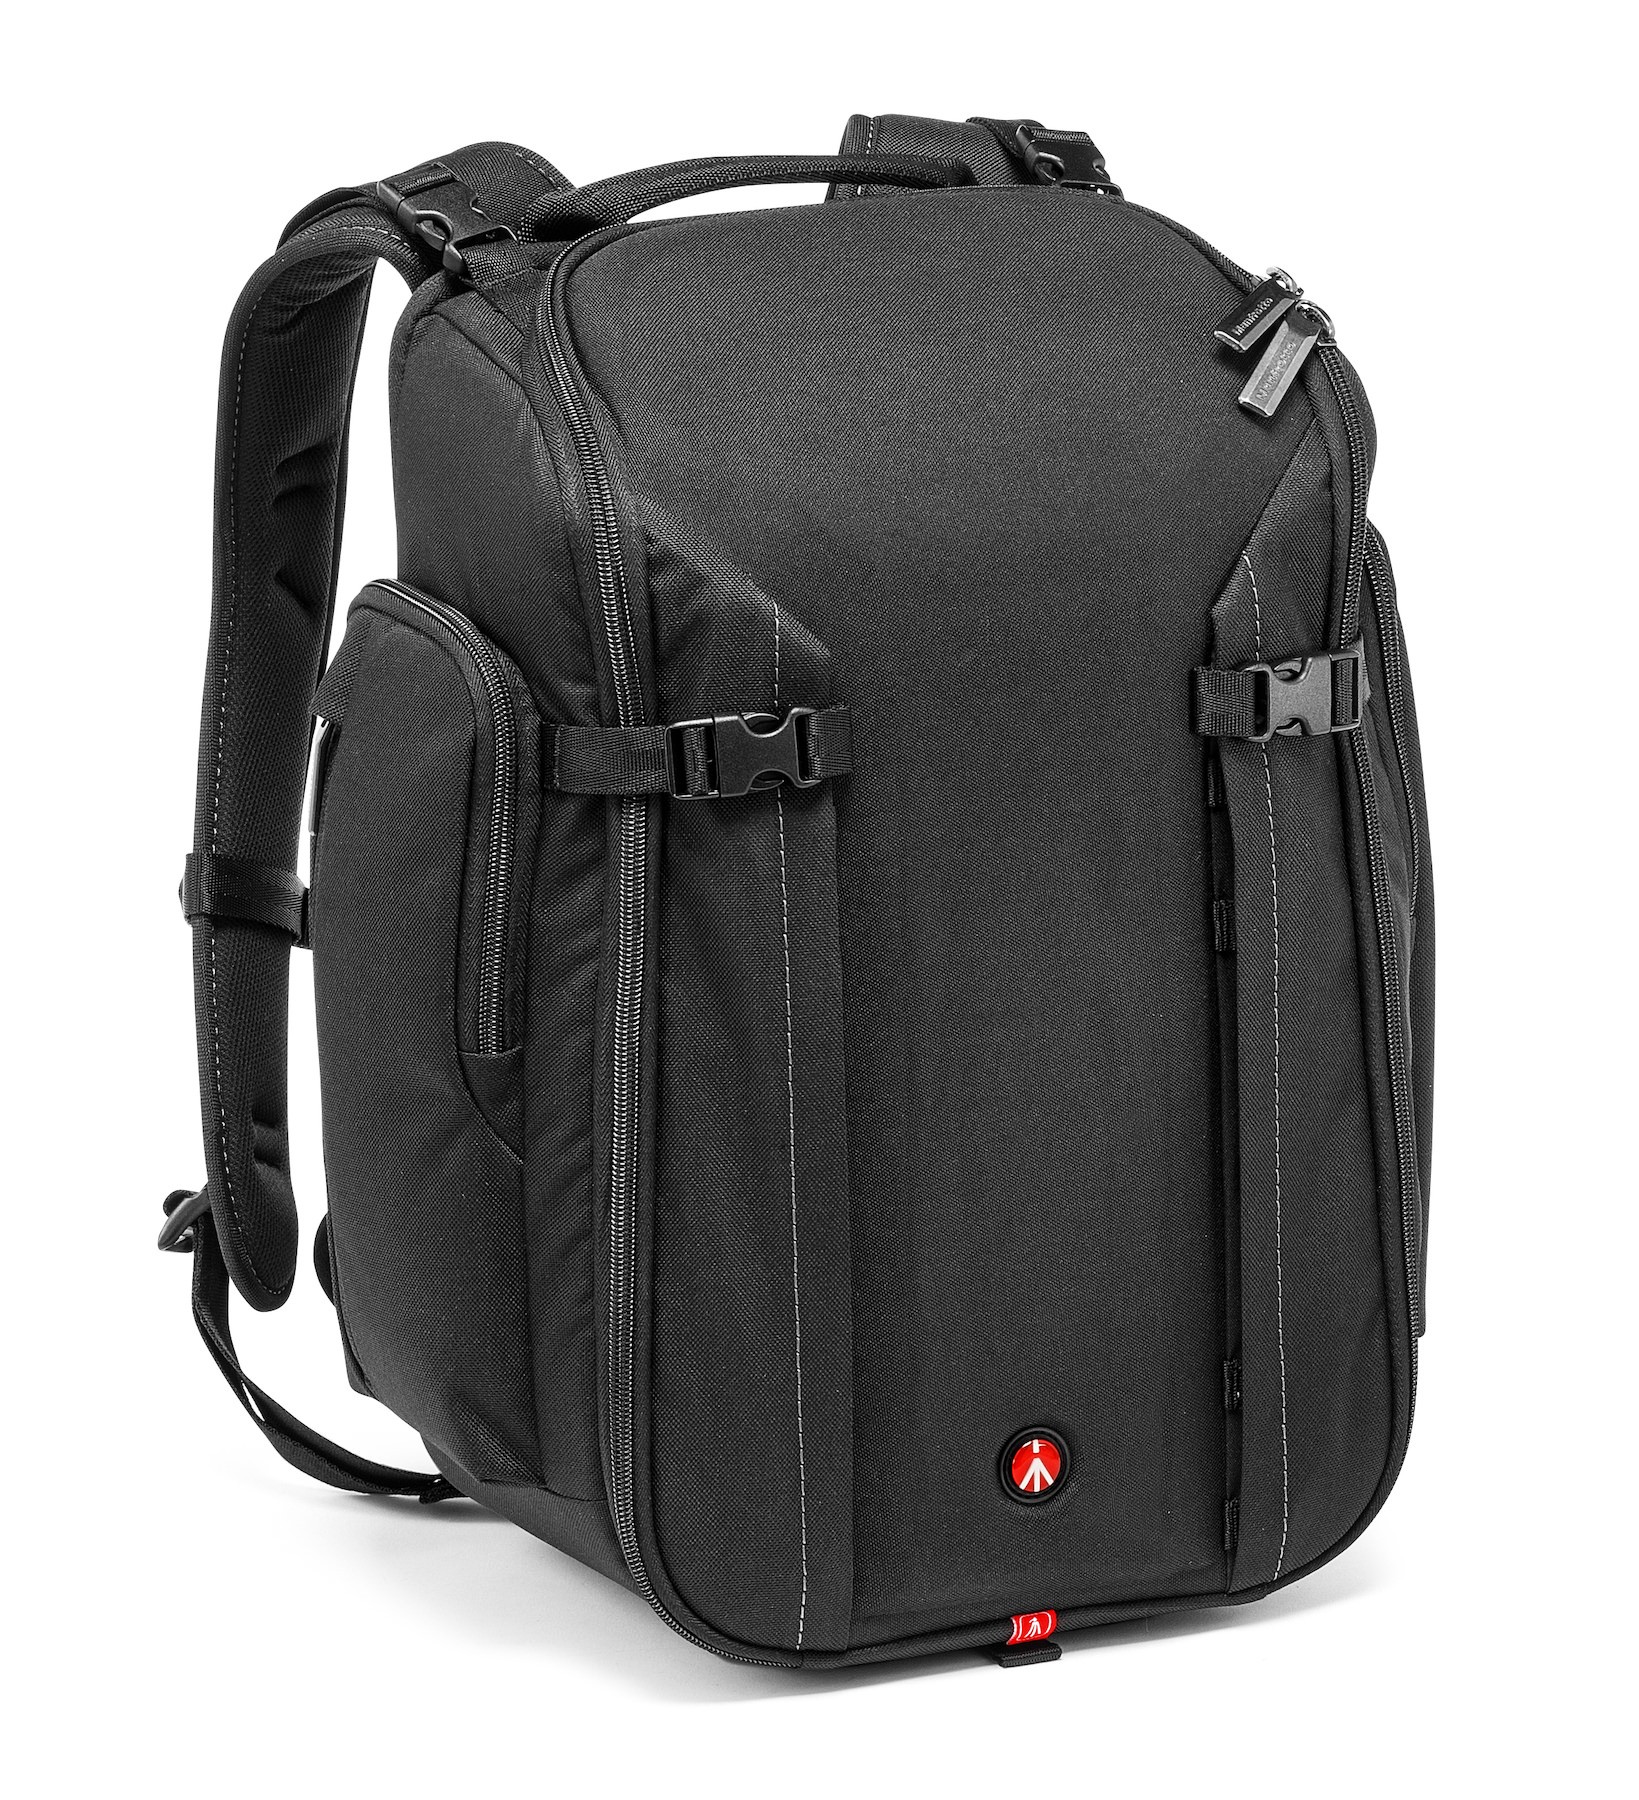 Professional camera backpack for DSLR